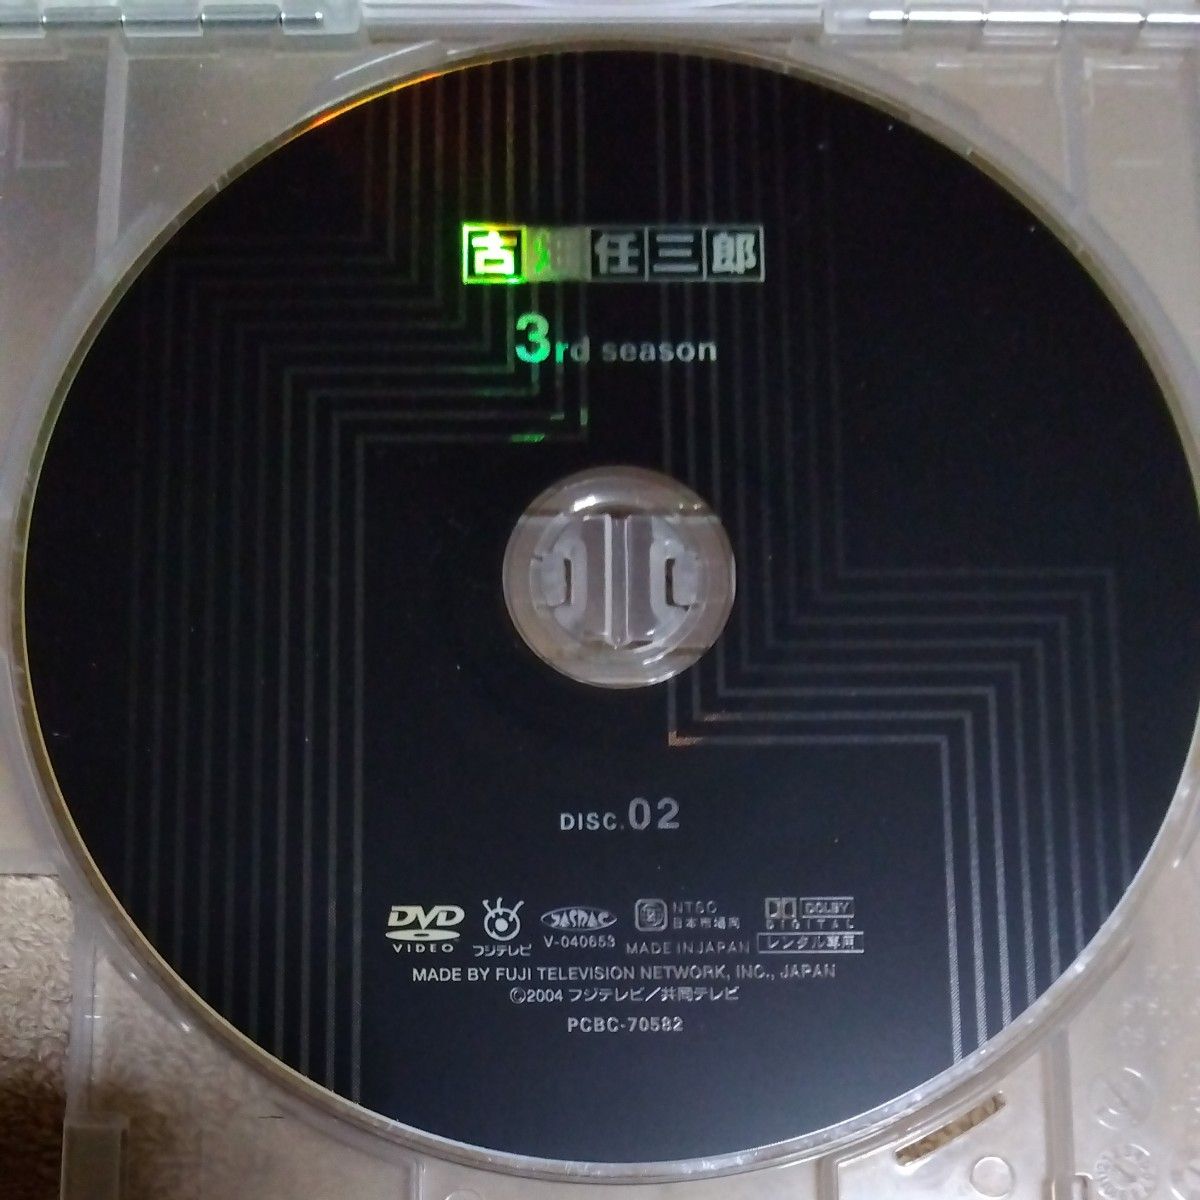 ◇古畑任三郎 3rd season DISC.02◇田村正和◇DVD◇ドラマ◇ディスクのみ◇